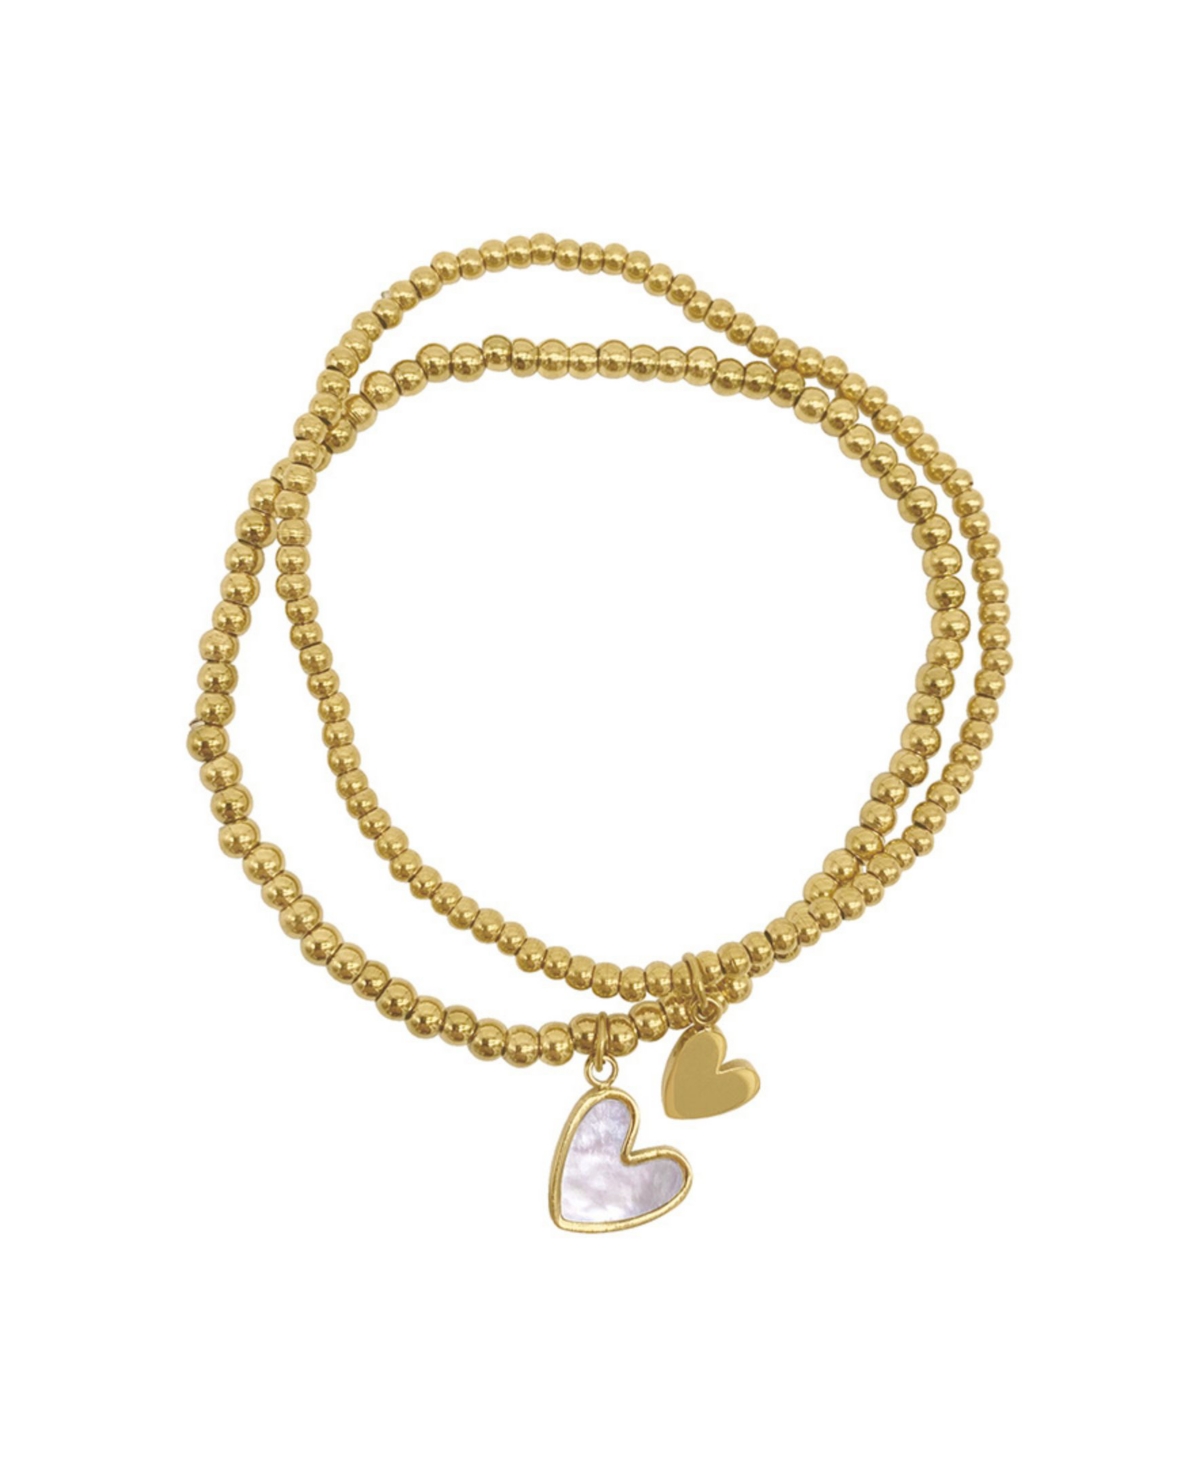 Gentle Heart Bracelet – Anandasoul